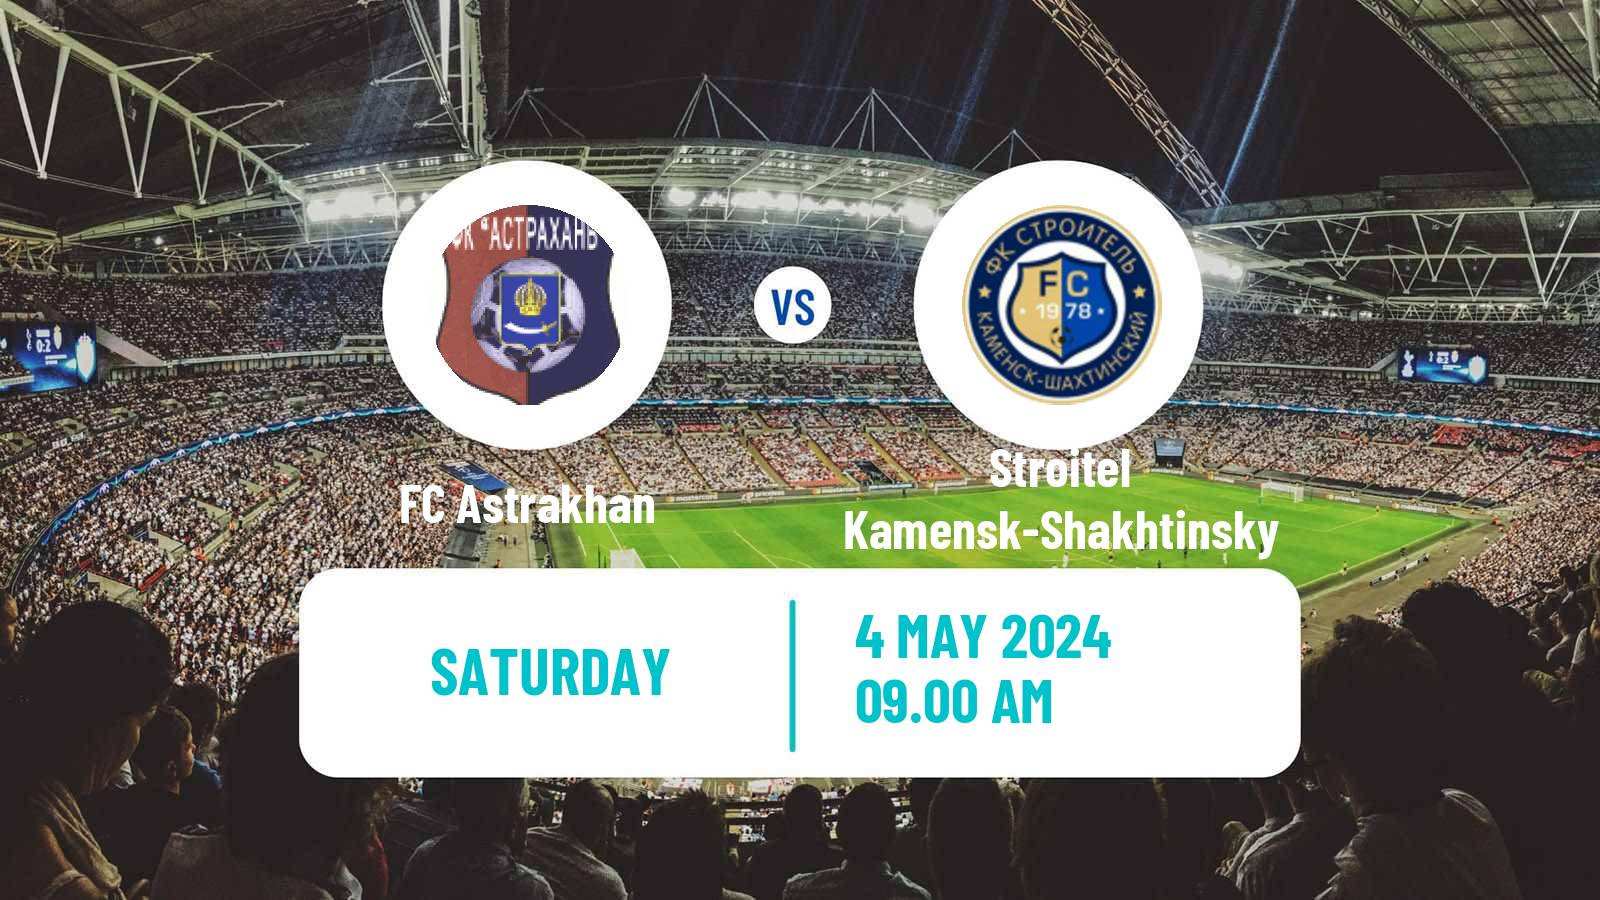 Soccer FNL 2 Division B Group 1 Astrakhan - Stroitel Kamensk-Shakhtinsky